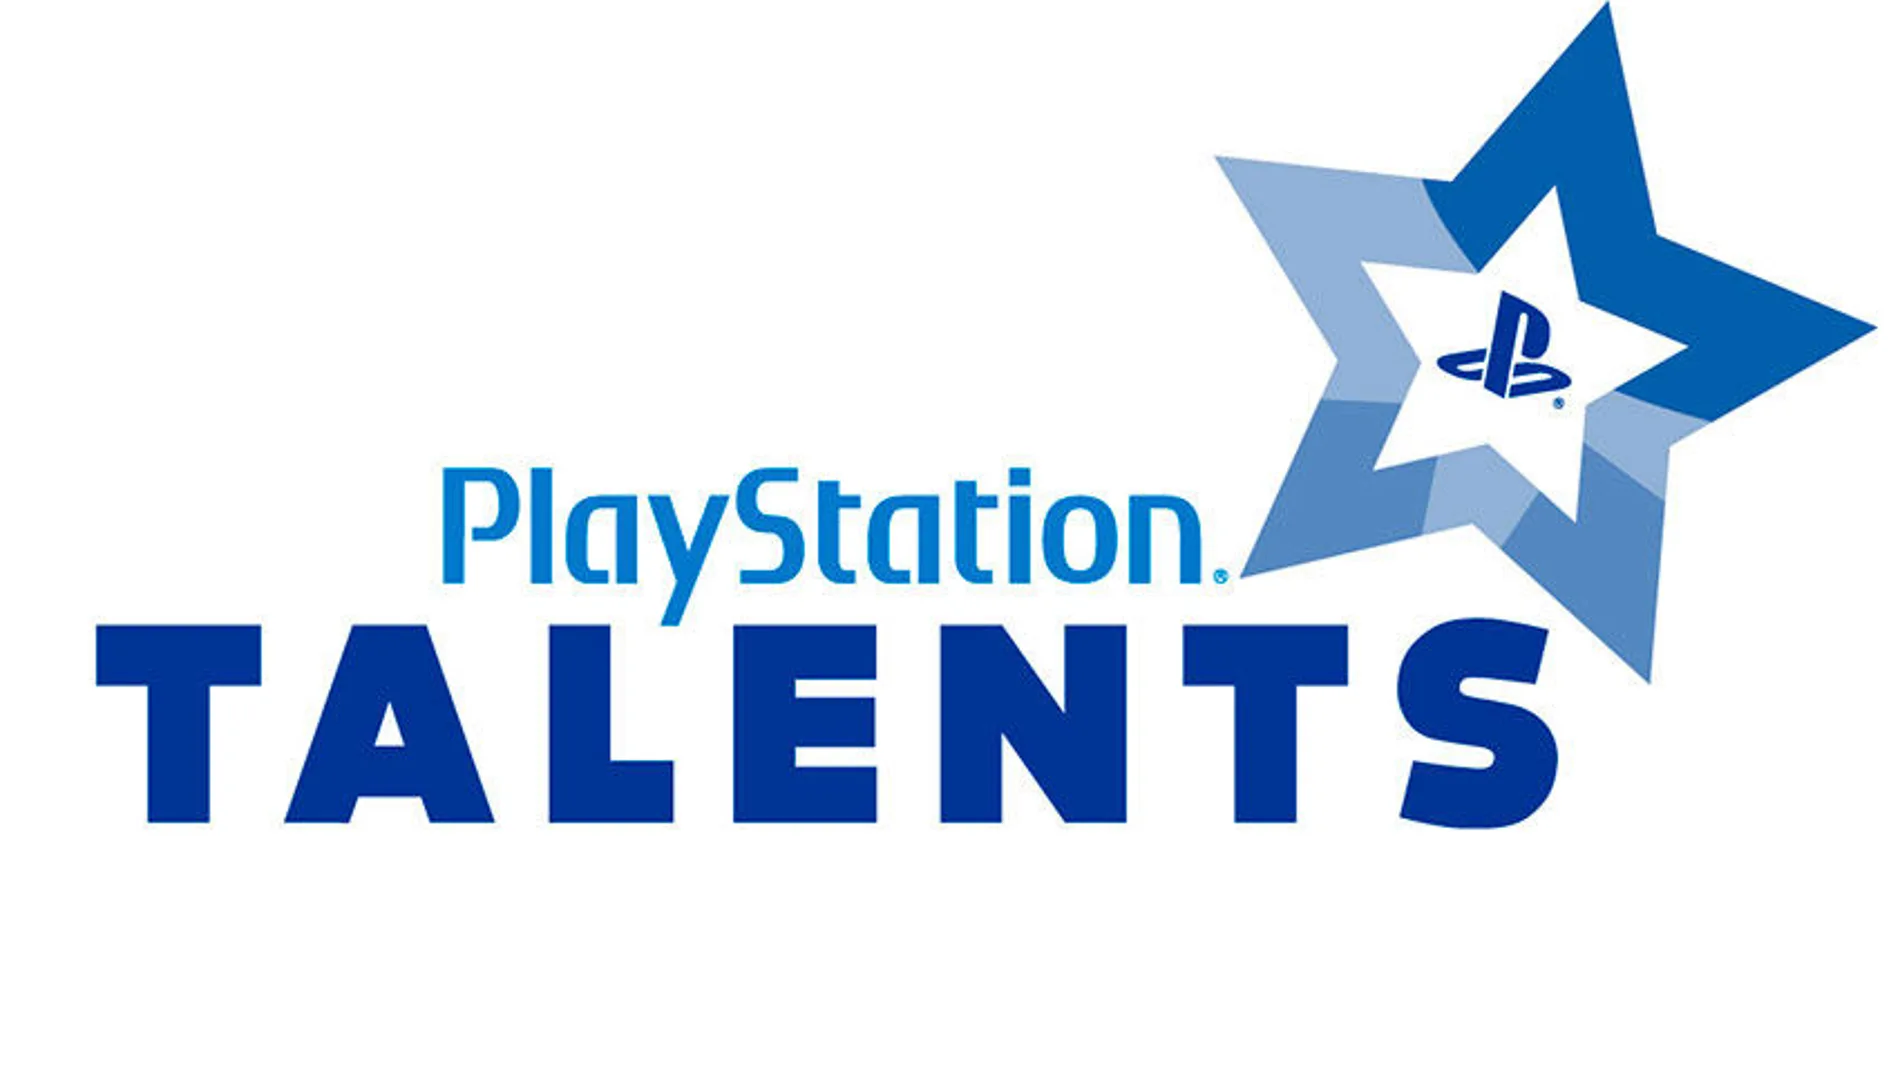 La VI edición de PlayStation Talents ya tiene sus doce estudios finalistas